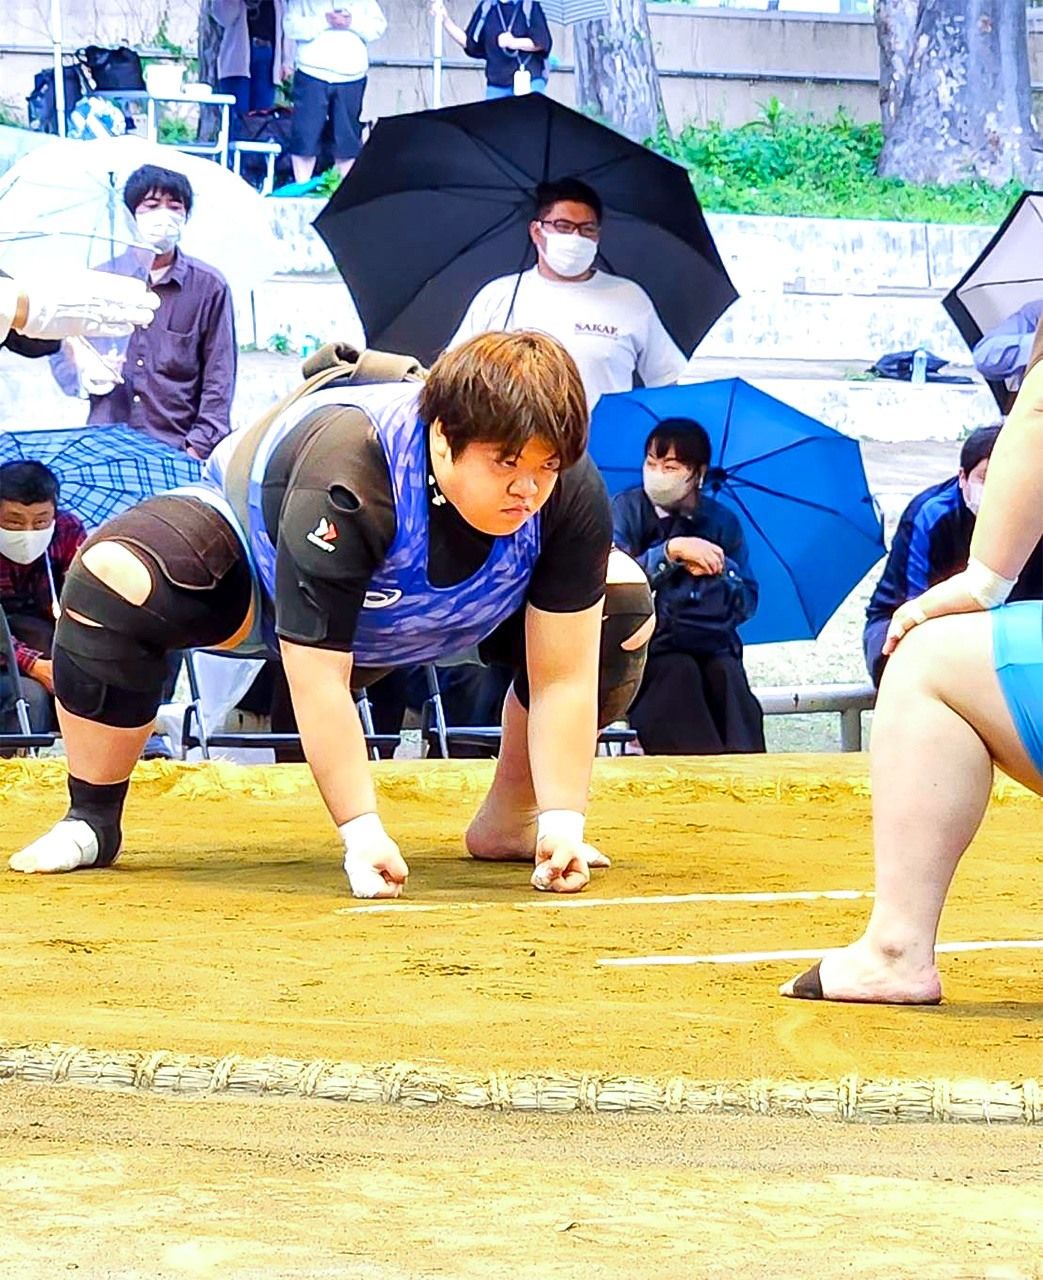 « Je suis toujours débutante dans le sumo, et il reste donc beaucoup de place pour améliorer mes aptitudes. Je veux apprendre en me confrontant à des lutteurs expérimentés », dit Hisano Airi, sans cacher ses ambitions. (Photo avec l'aimable autorisation de Hisano Airi)